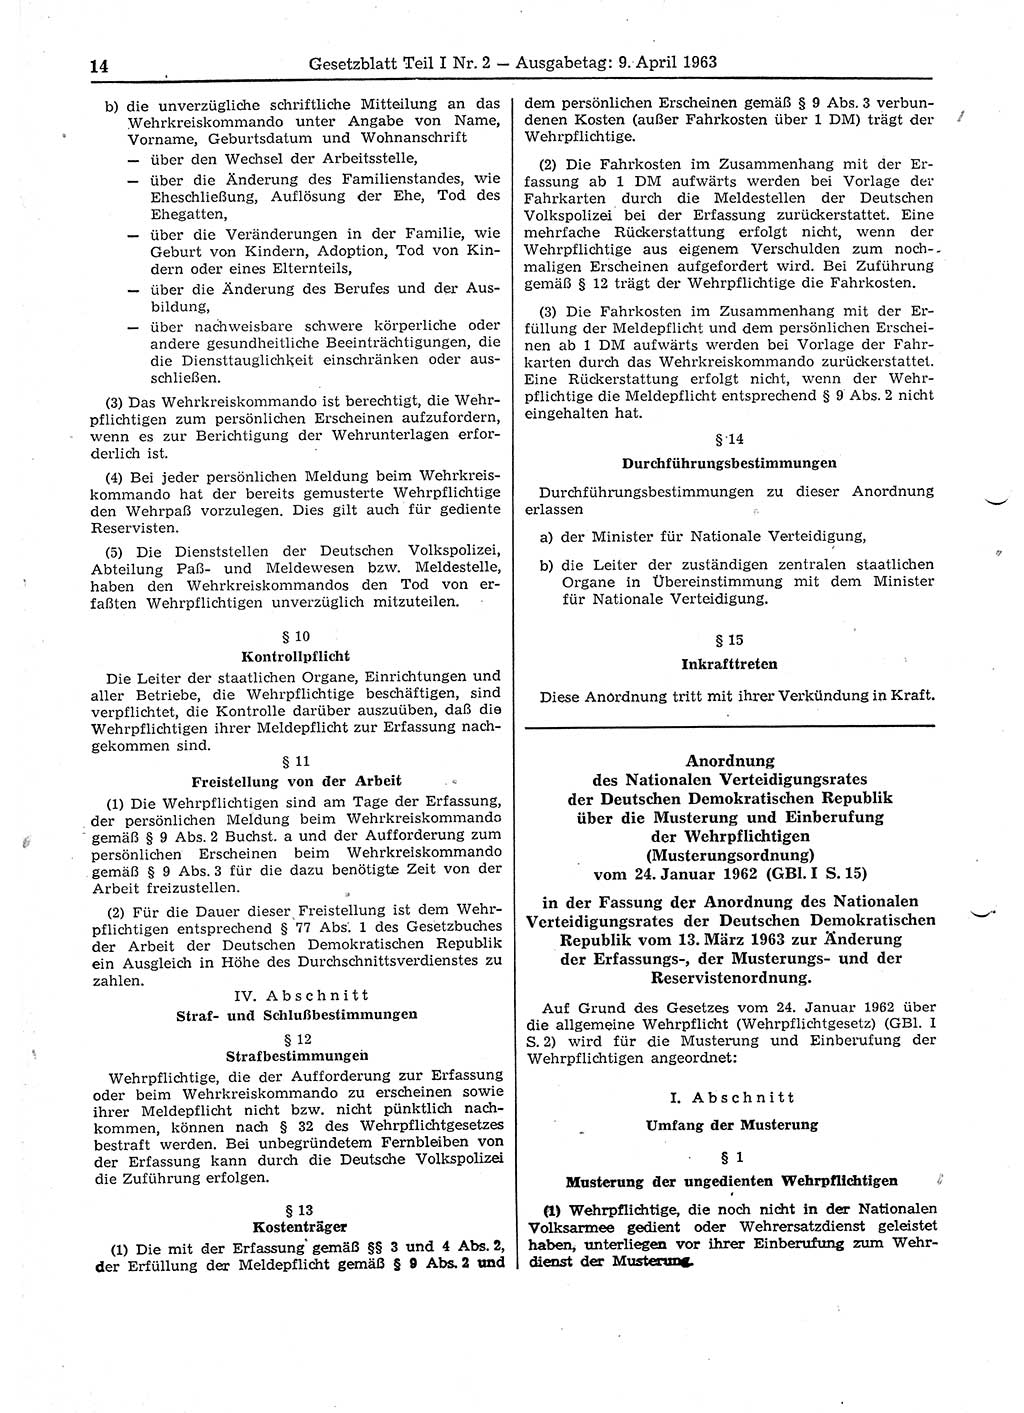 Gesetzblatt (GBl.) der Deutschen Demokratischen Republik (DDR) Teil Ⅰ 1963, Seite 14 (GBl. DDR Ⅰ 1963, S. 14)